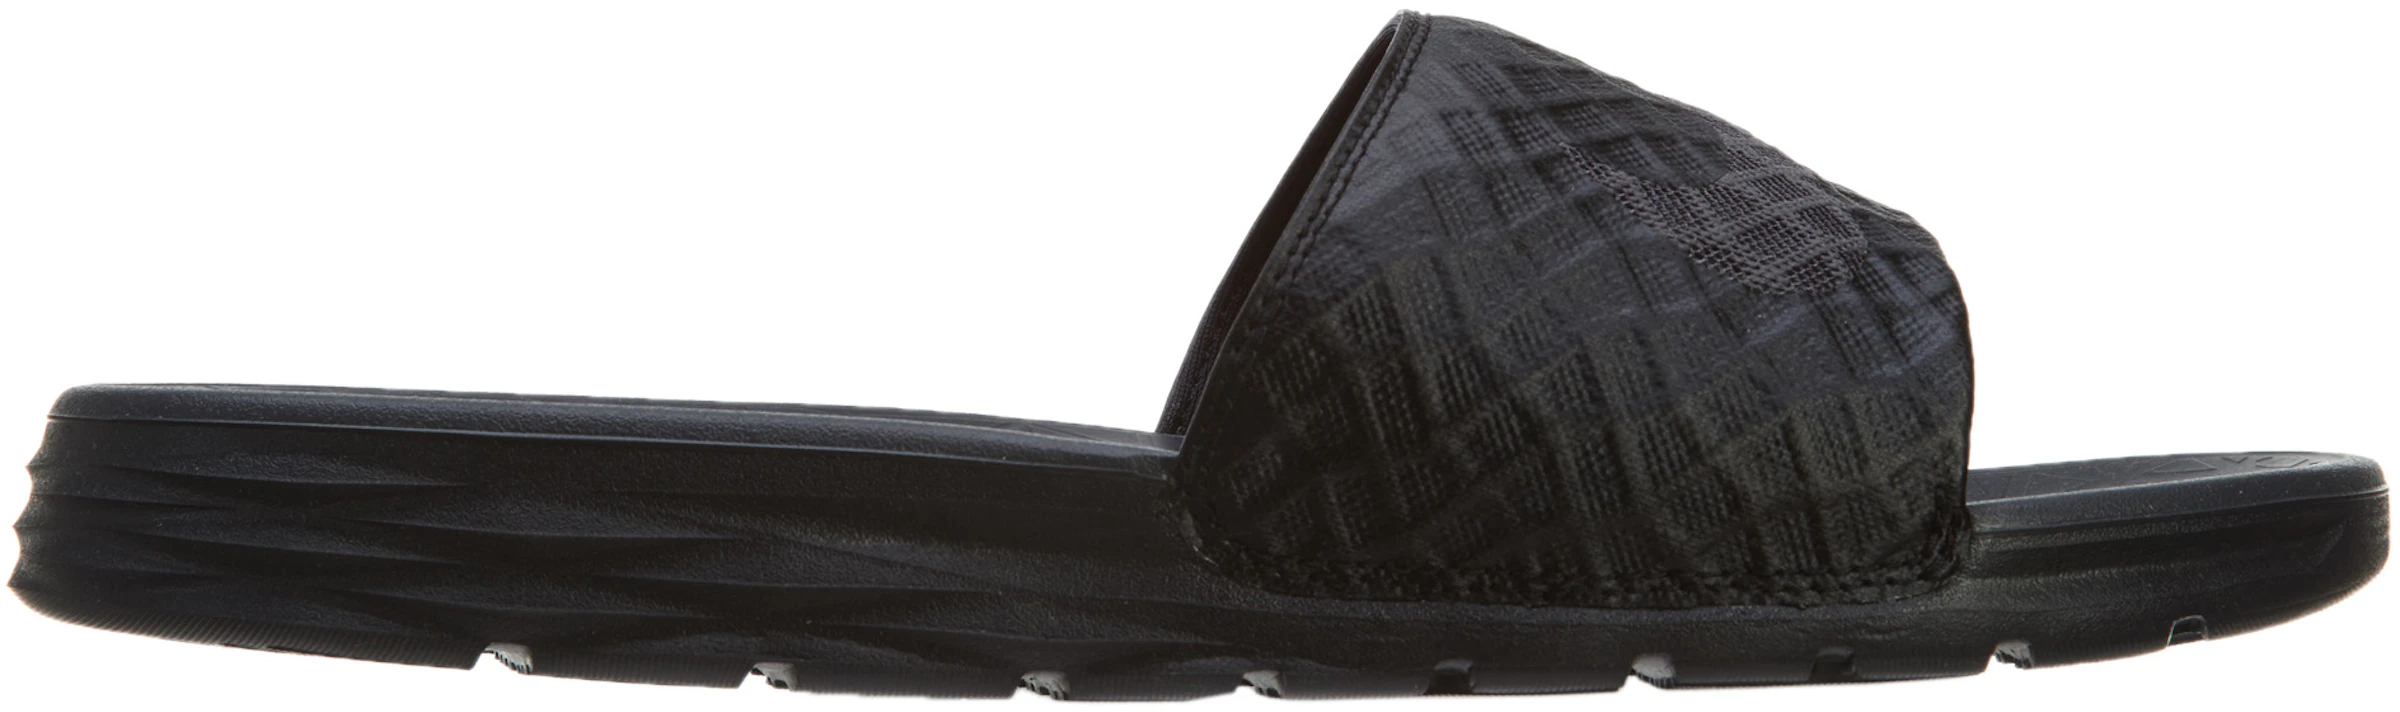 Orador Gimnasio etiqueta Nike Benassi Solarsoft Slide 2 Black Anthracite - 705474-091 - ES